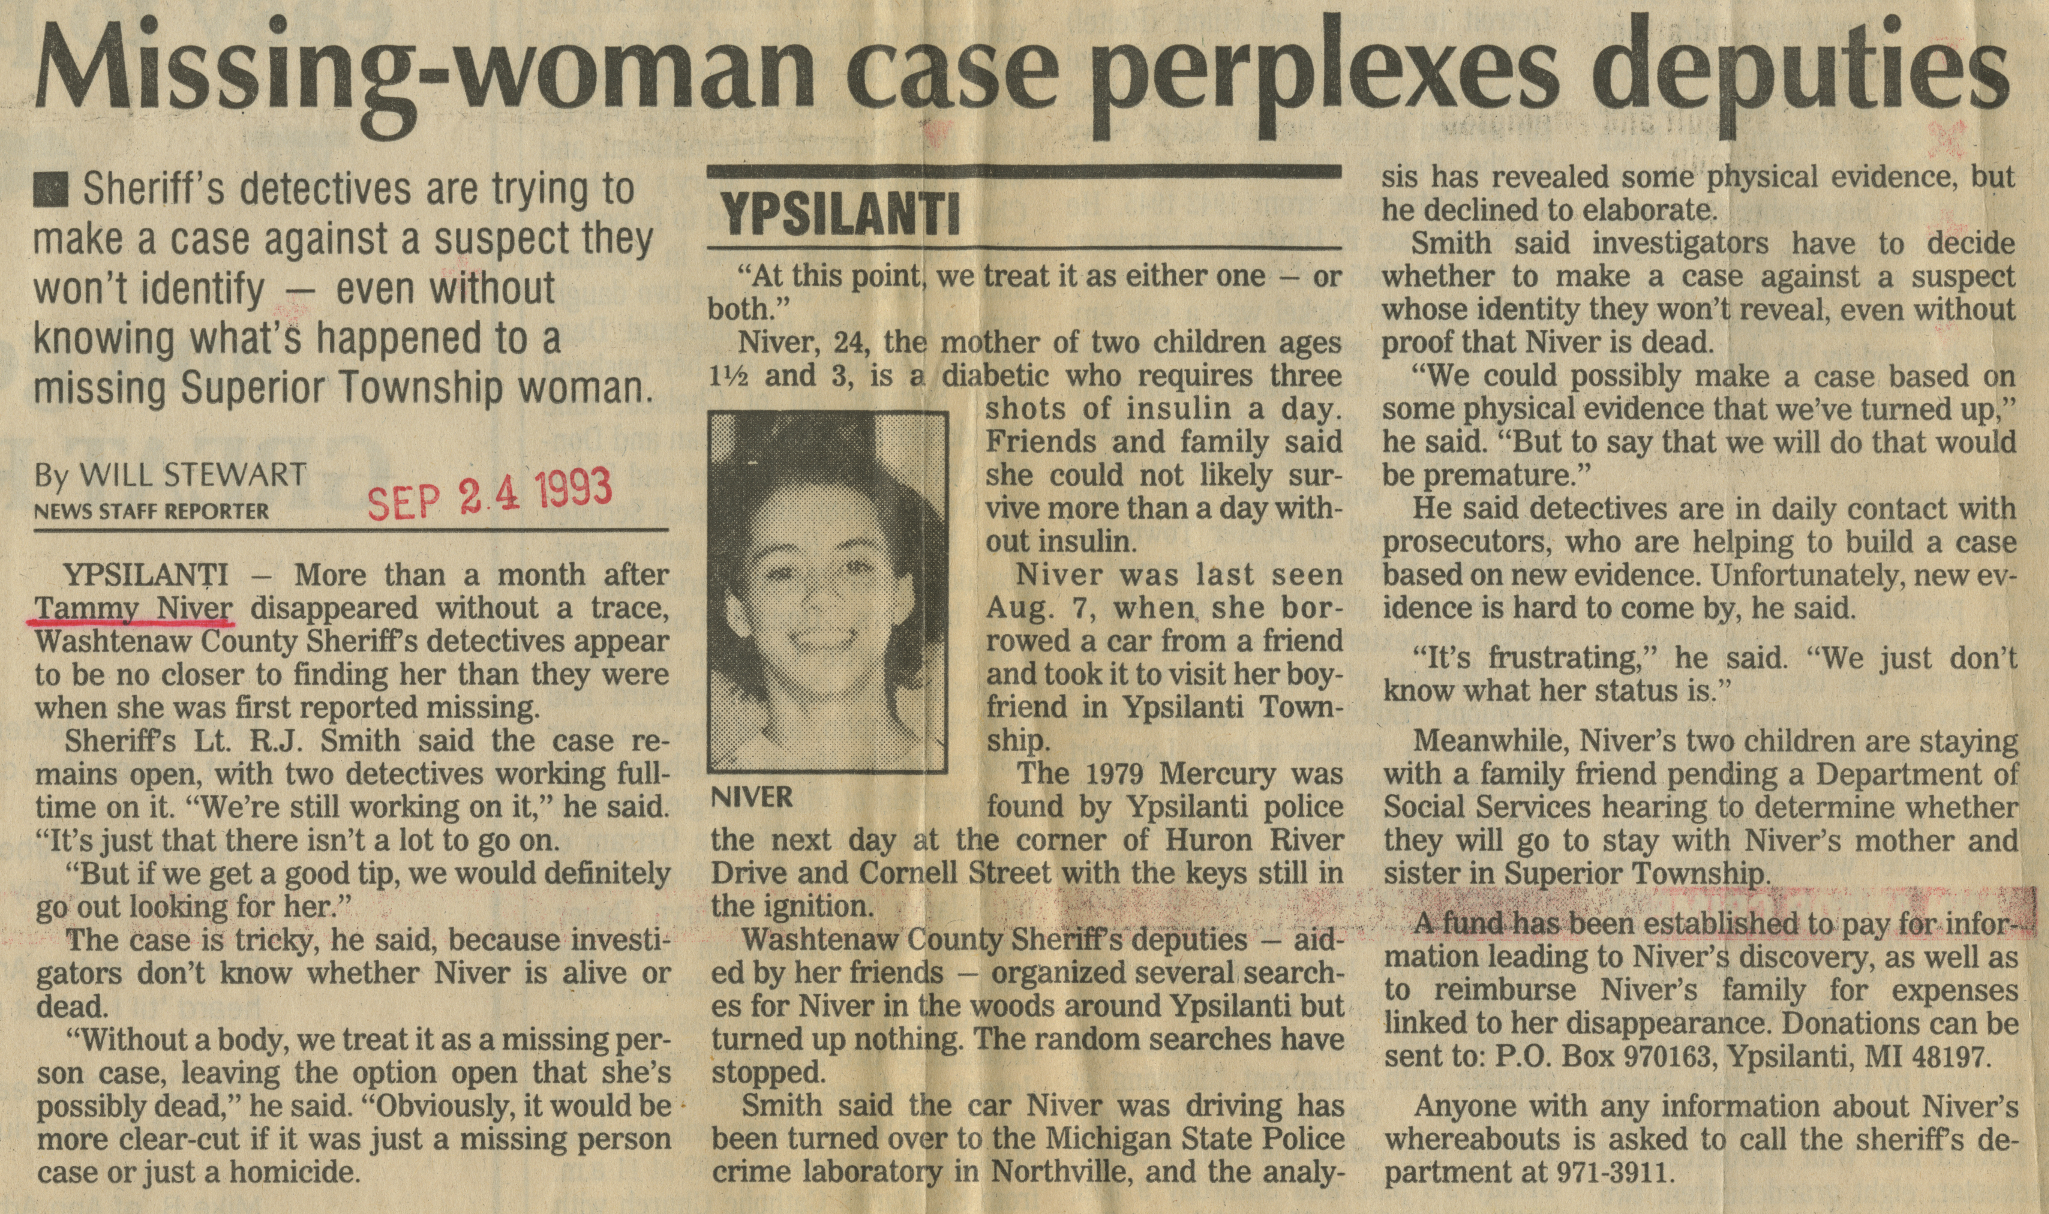 aa_news_19930924-missing_woman_case_perplexes_deputies.jpg